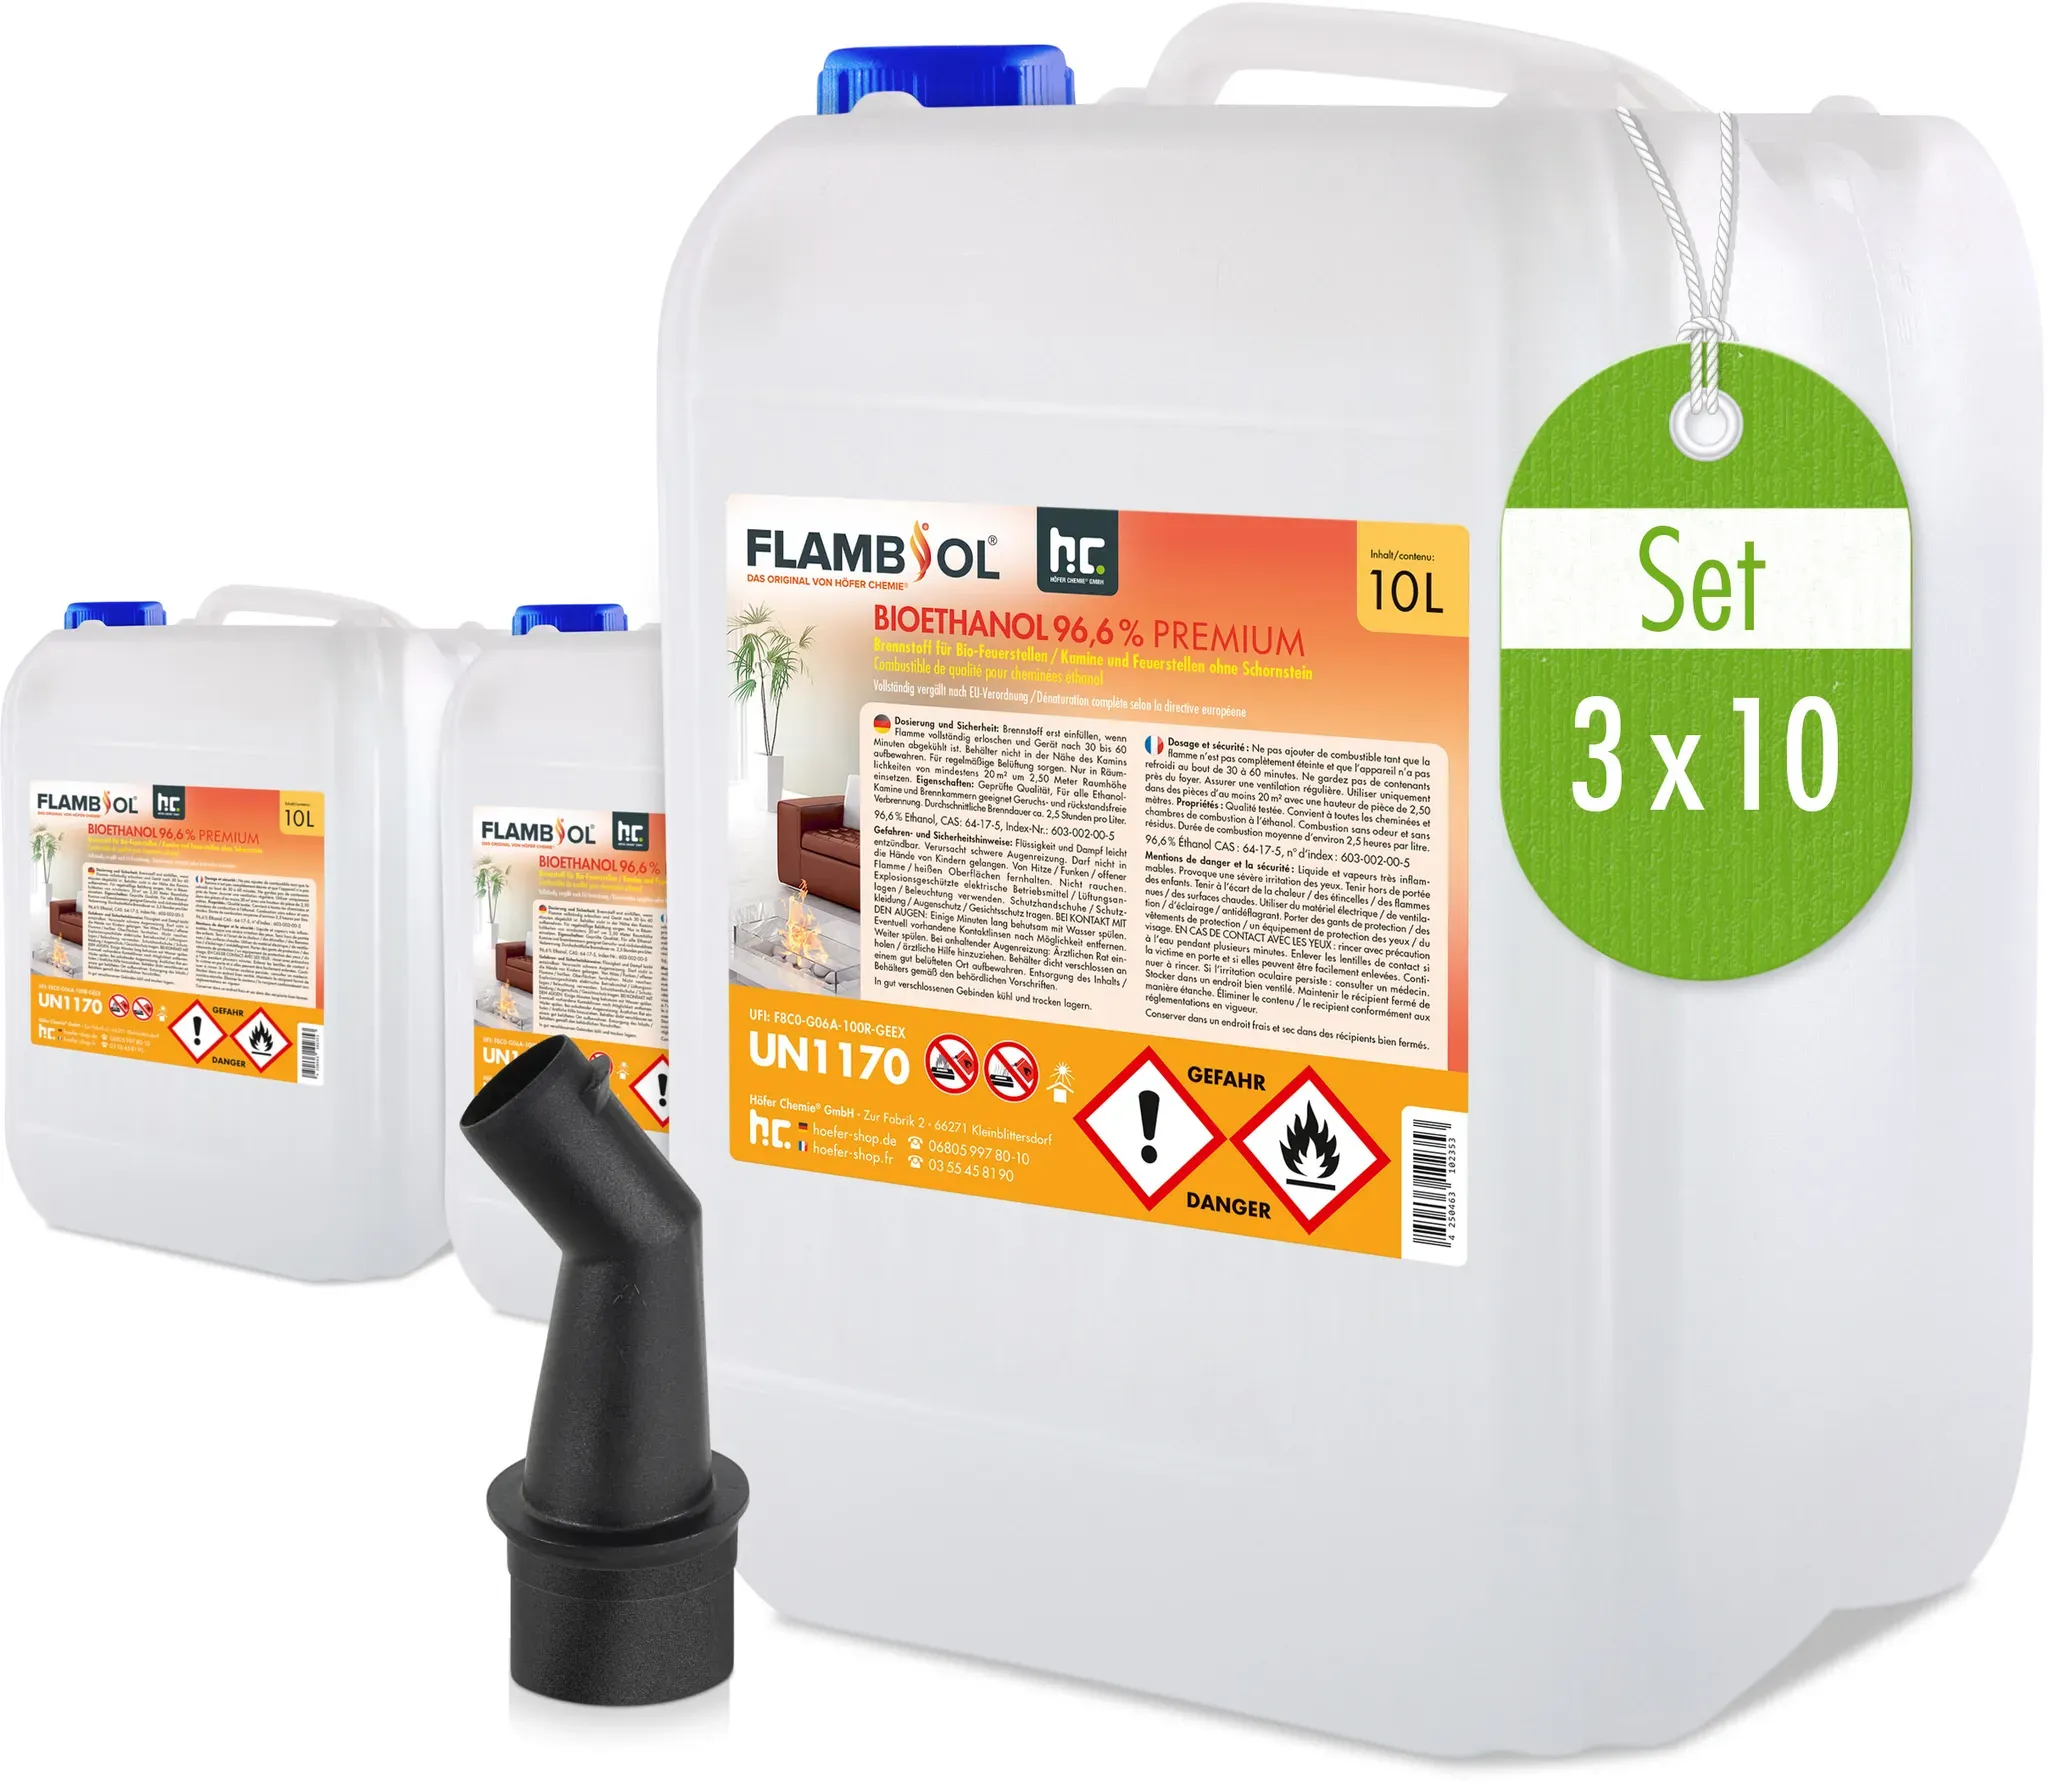 3 x 10 L FLAMBIOL® Bioéthanol 96,6% Premium pour cheminée à éthanol en bidons